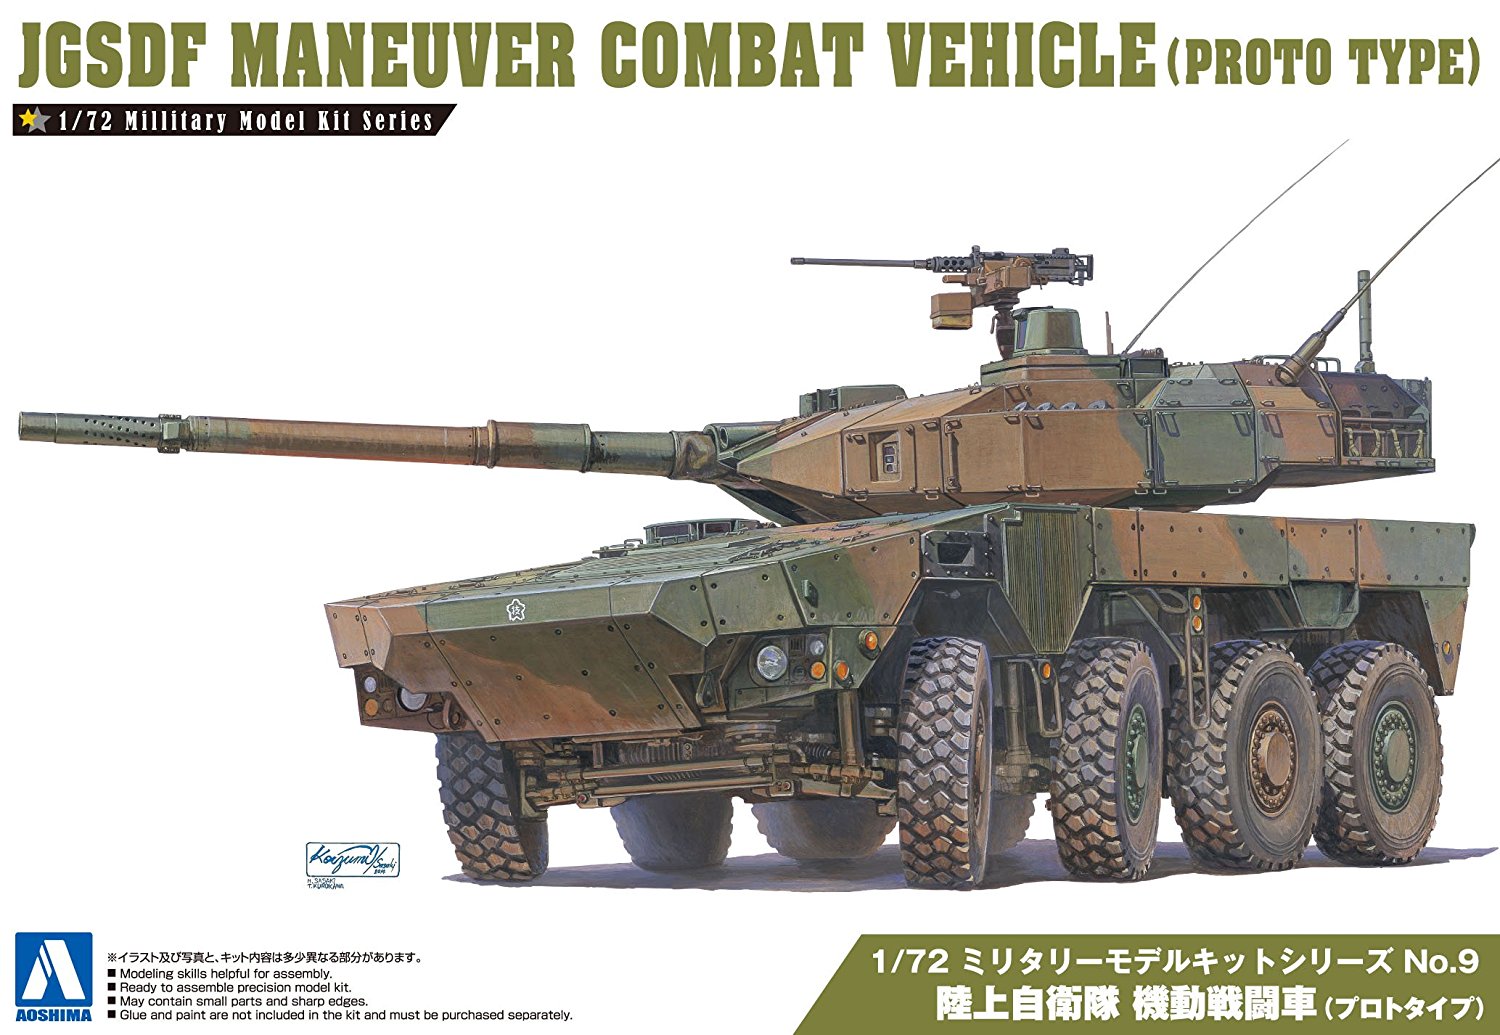 JGSDF Maneuver Combat Vehicle (Prototype)